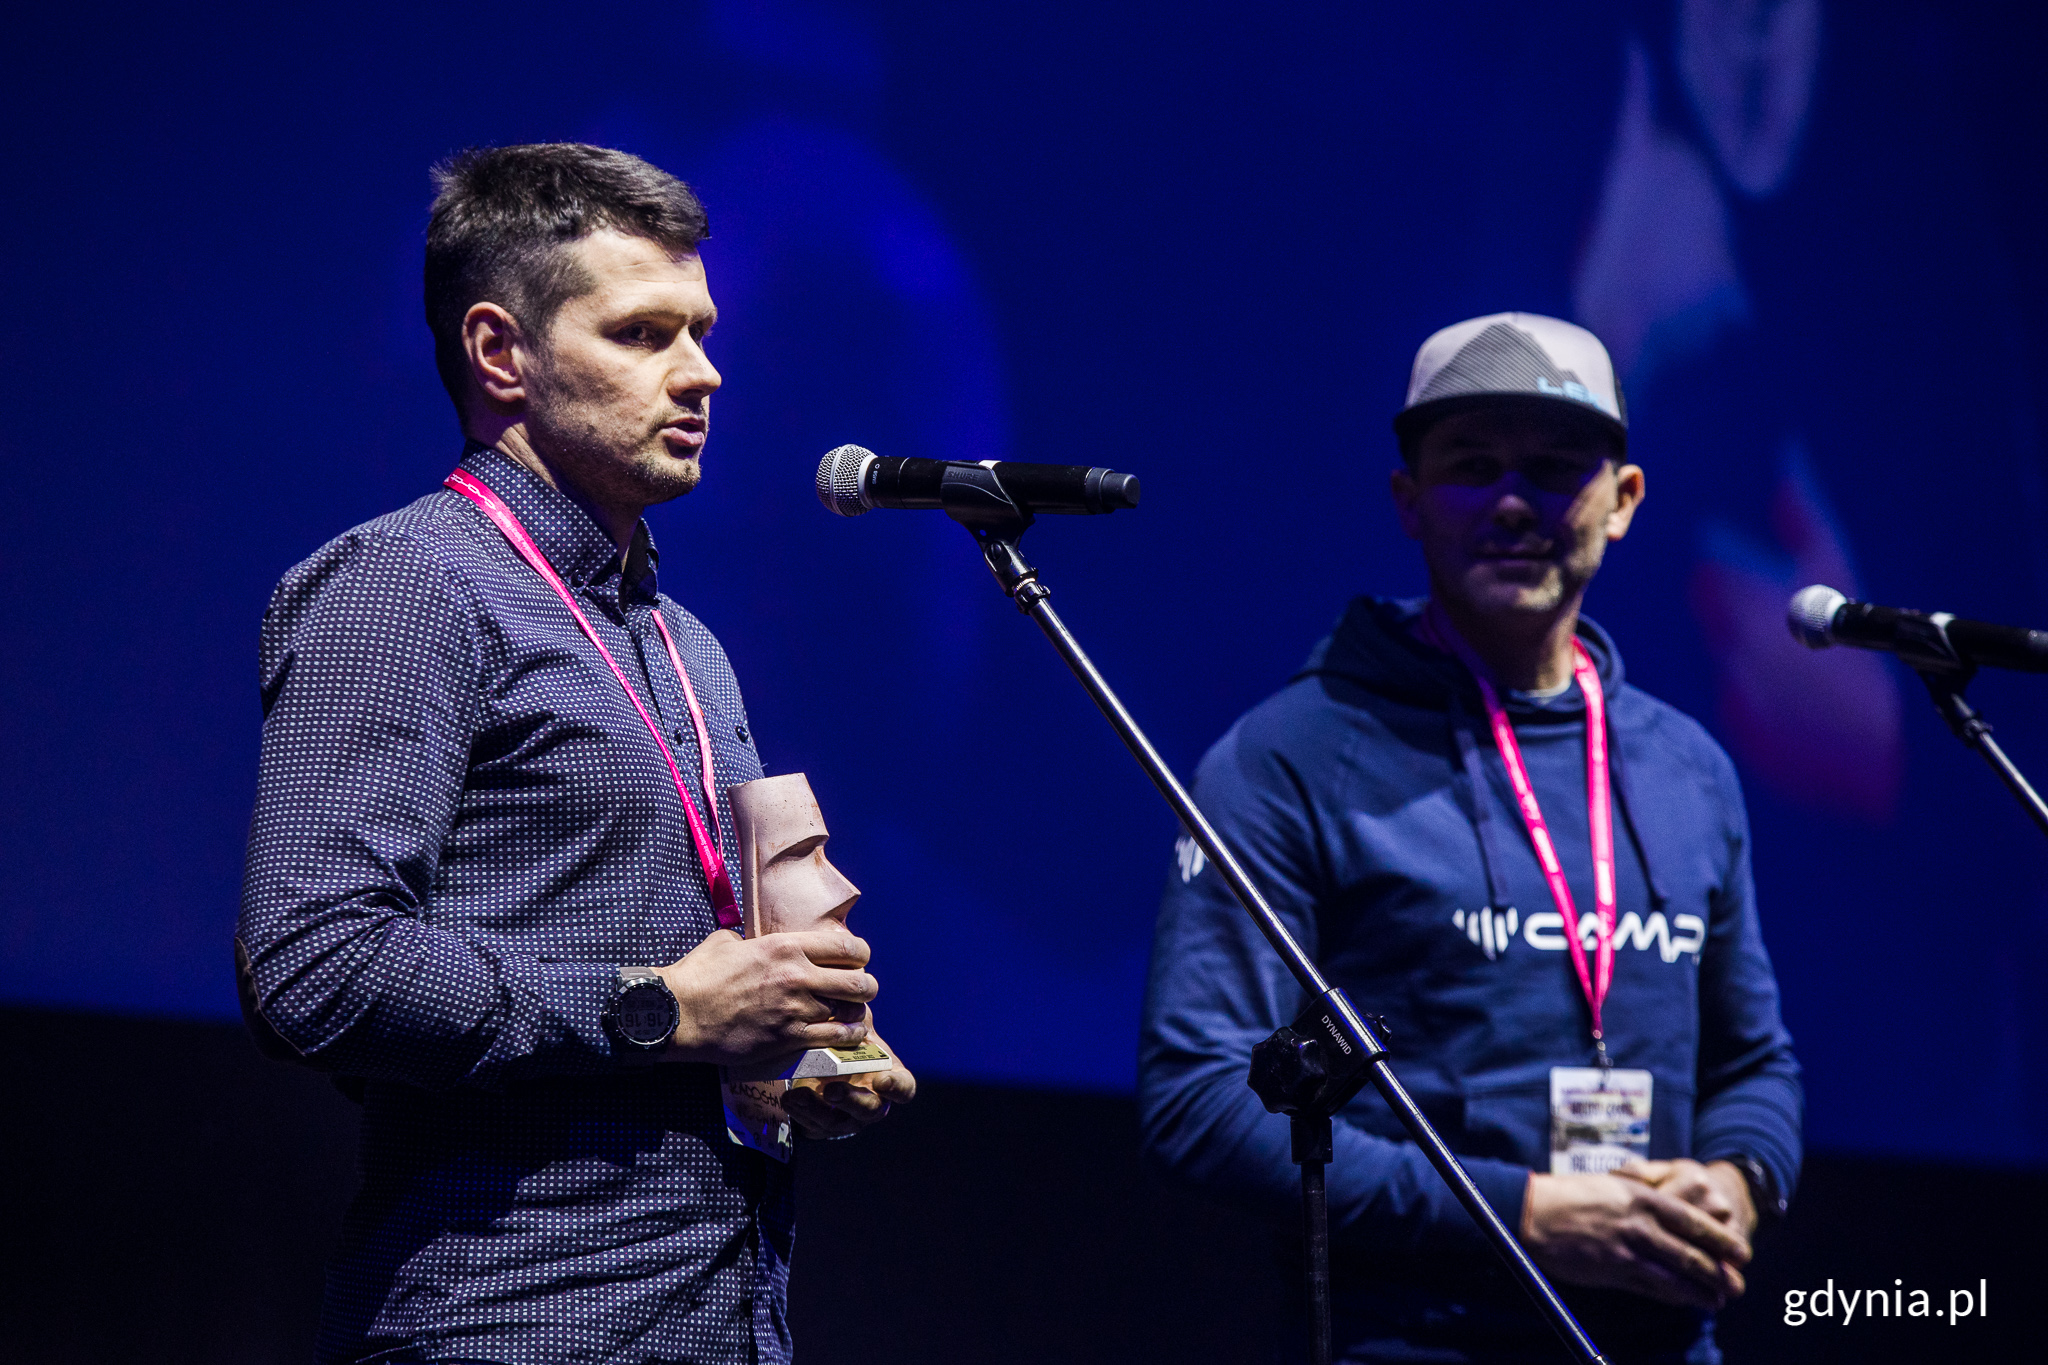 Od lewej: Radosław Woźniak i Piotr Krzyżowski, zdobywcy wyróżnienia w kategorii "Alpinizm" podczas niedzielnej gali wręczenia nagród // fot. Karol Stańczak